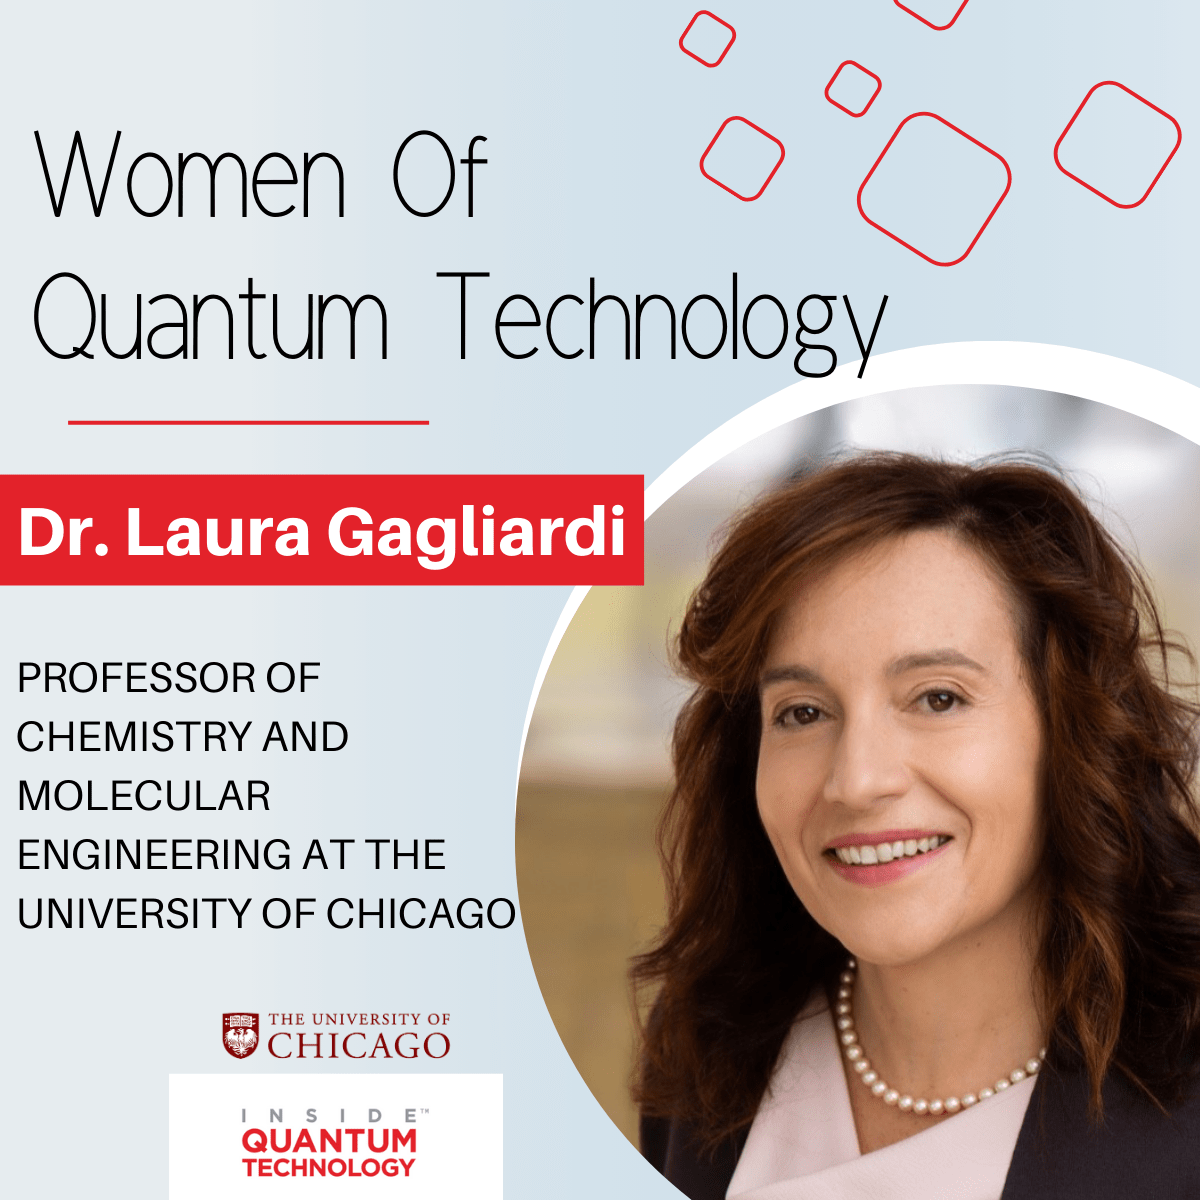 Kuantum Teknolojisinin Kadınları: Chicago Üniversitesi'nden Dr. Laura Gagliardi - Inside Quantum Technology